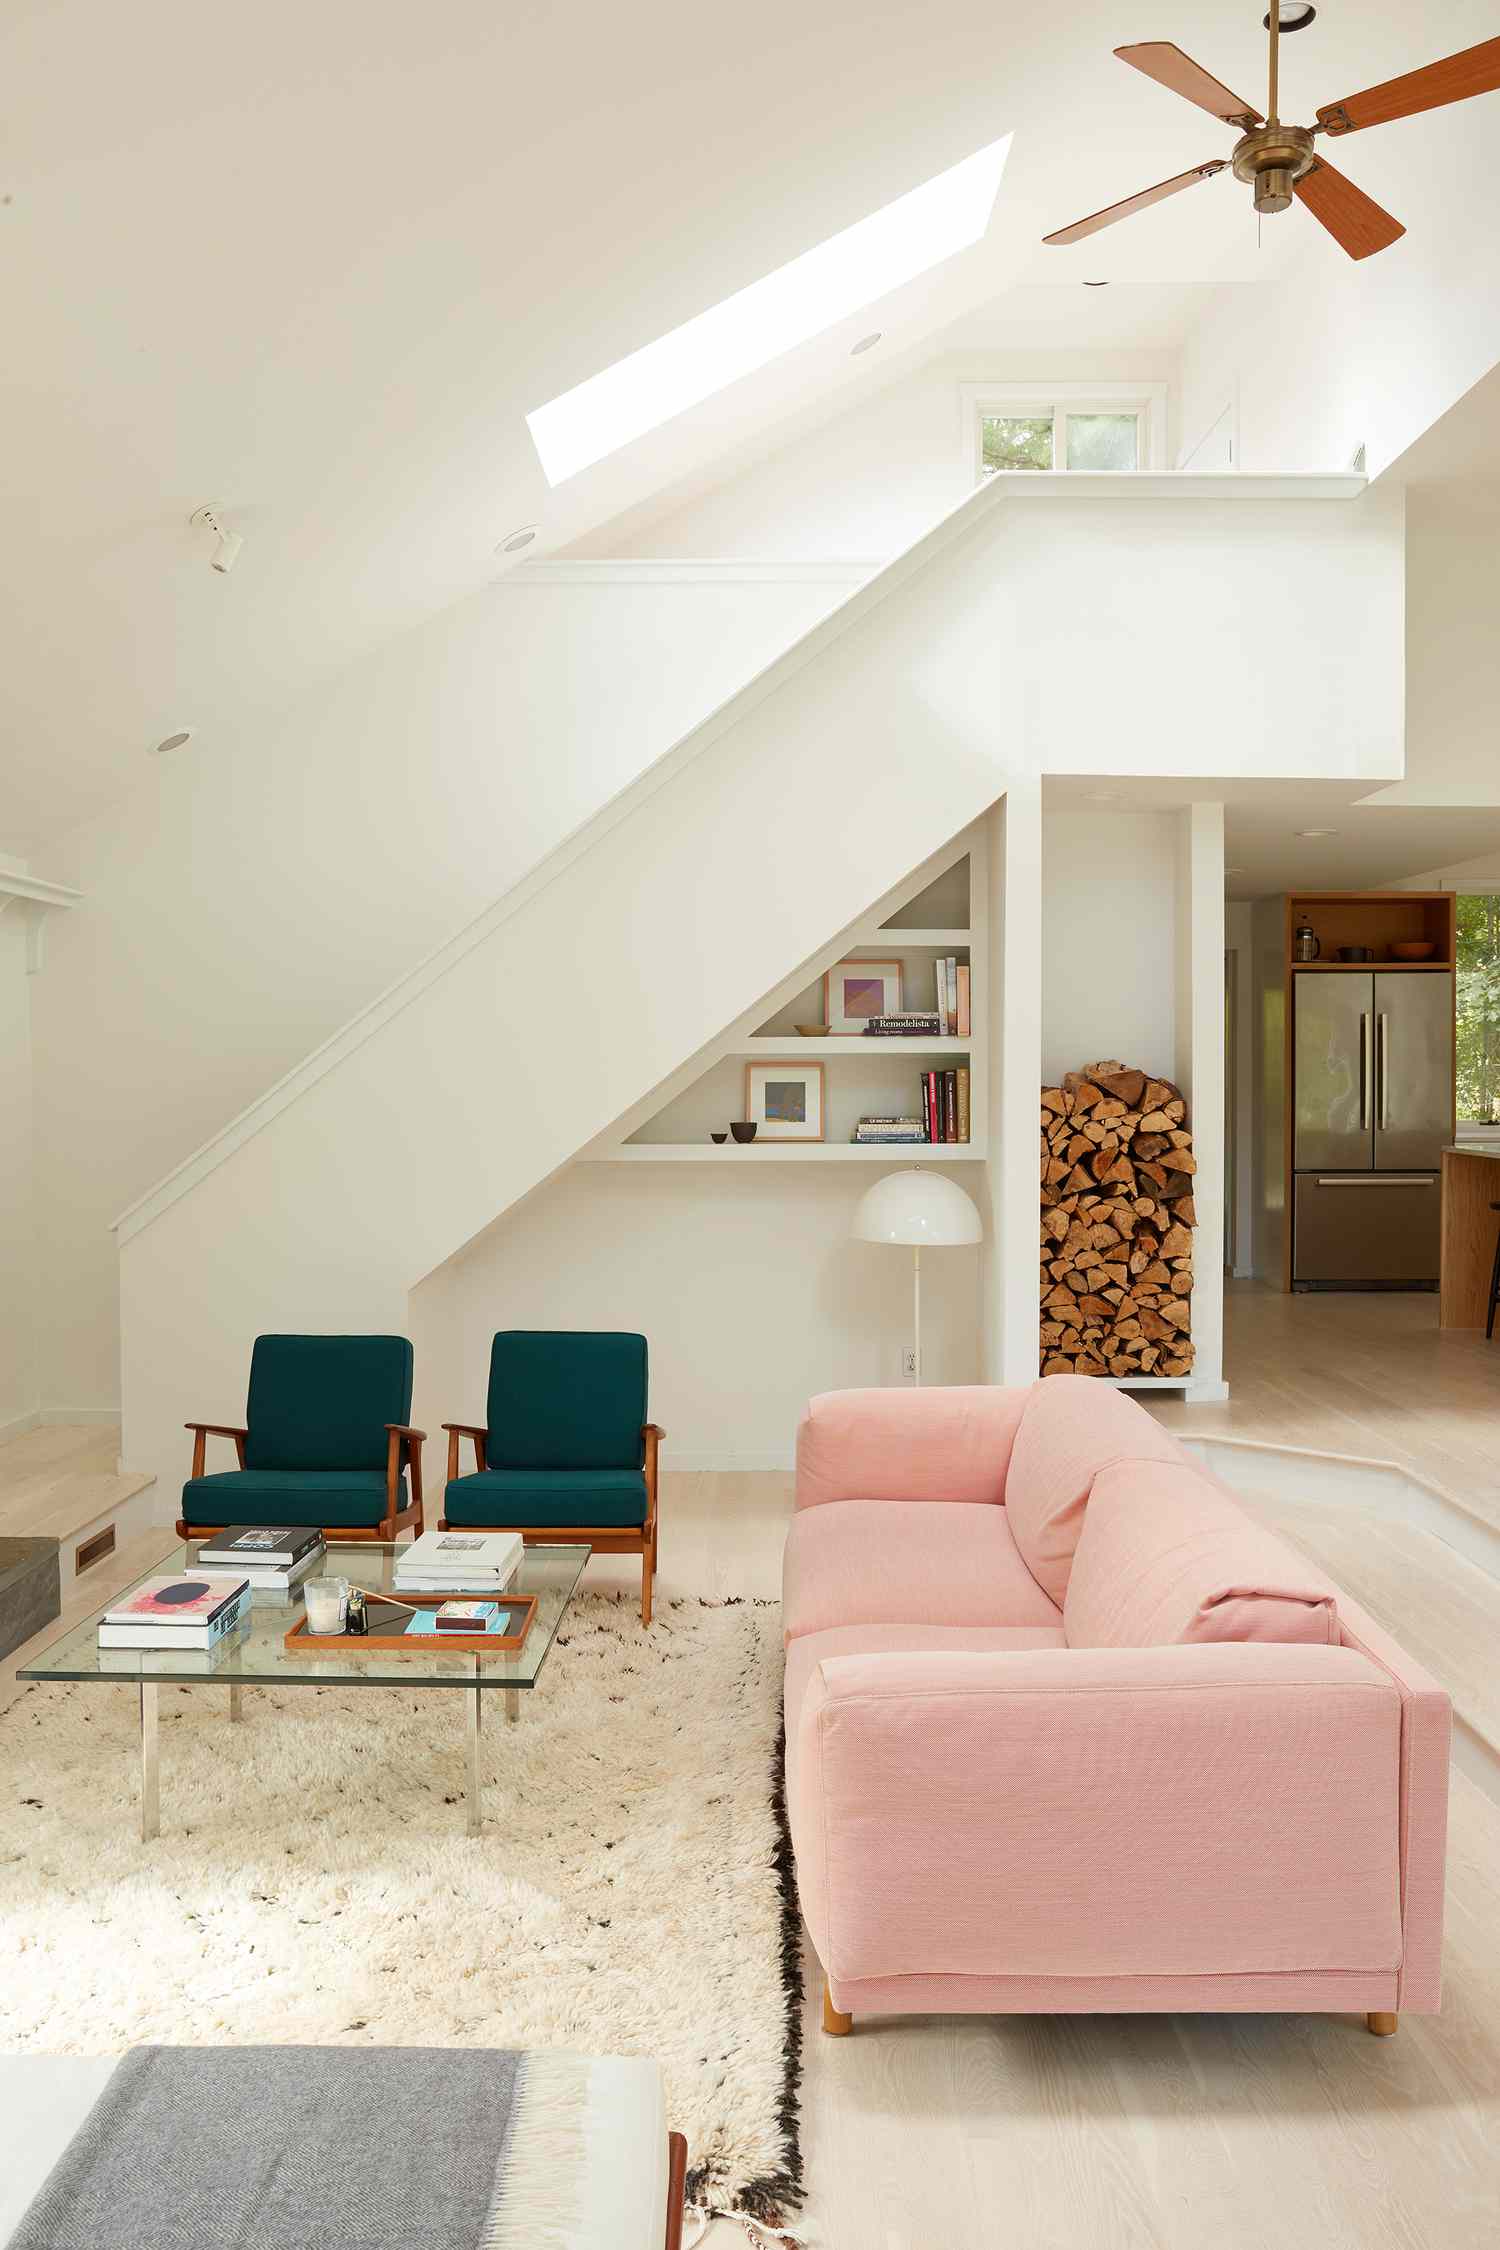 Weißes Zimmer mit rosa Sofa und tealfarbenen Stühlen